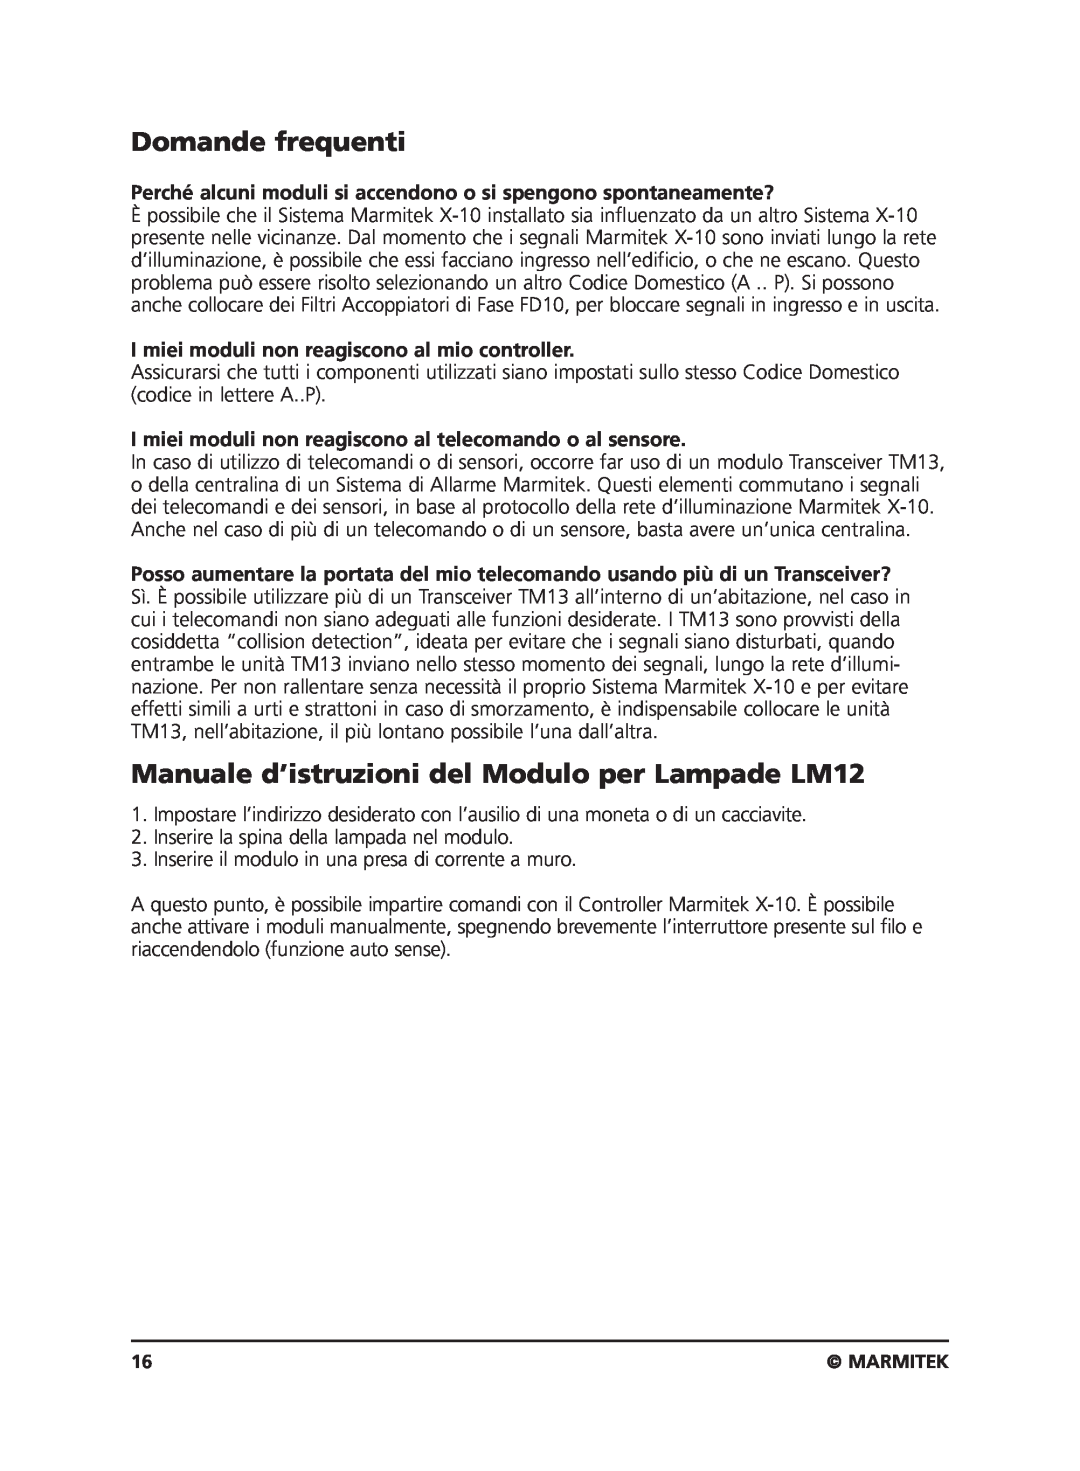 Marmitek user manual Domande frequenti, Manuale d’istruzioni del Modulo per Lampade LM12 